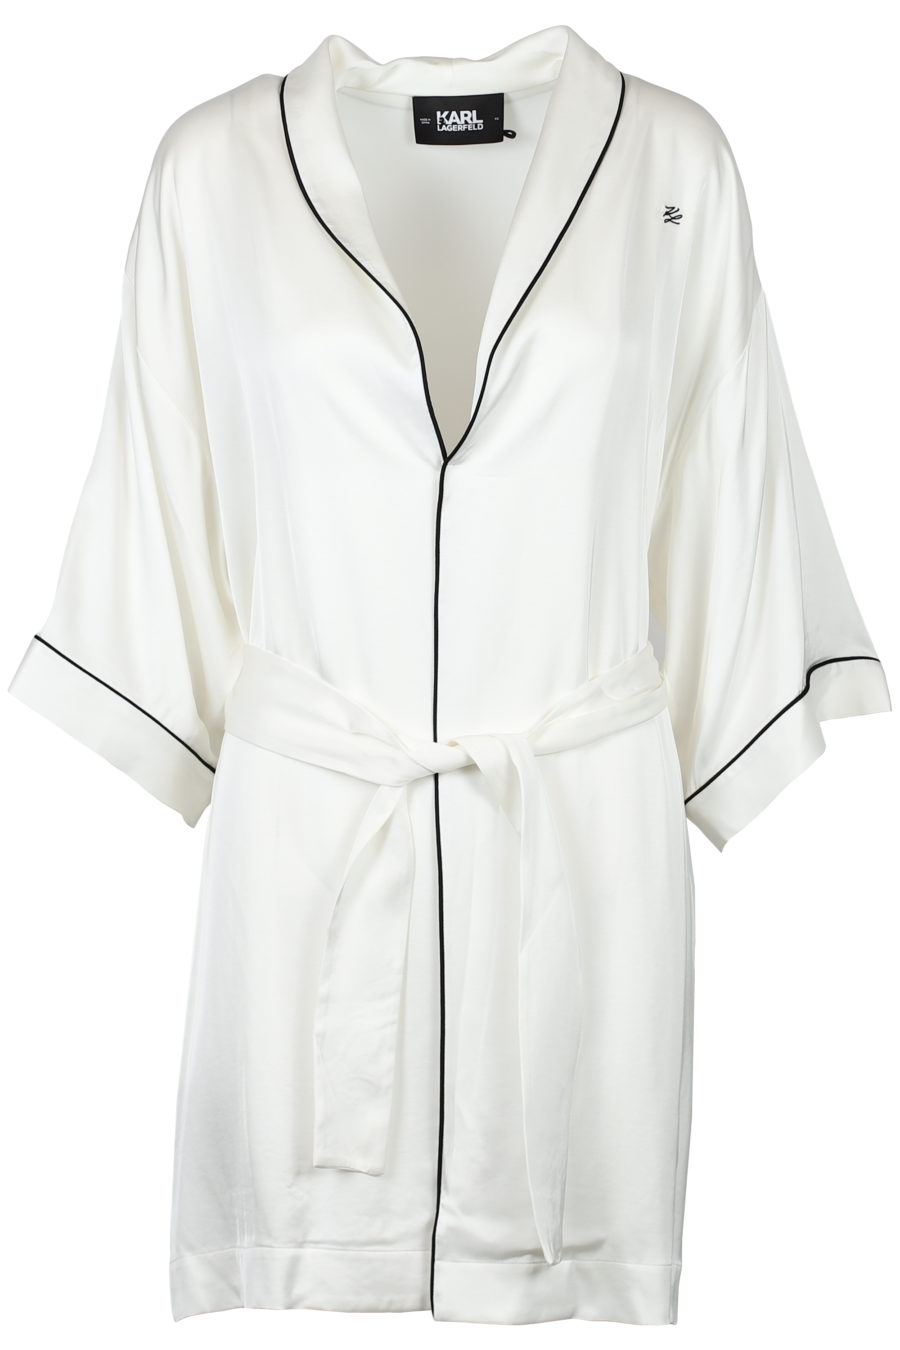 Off-white satin kimono - IMG 2118